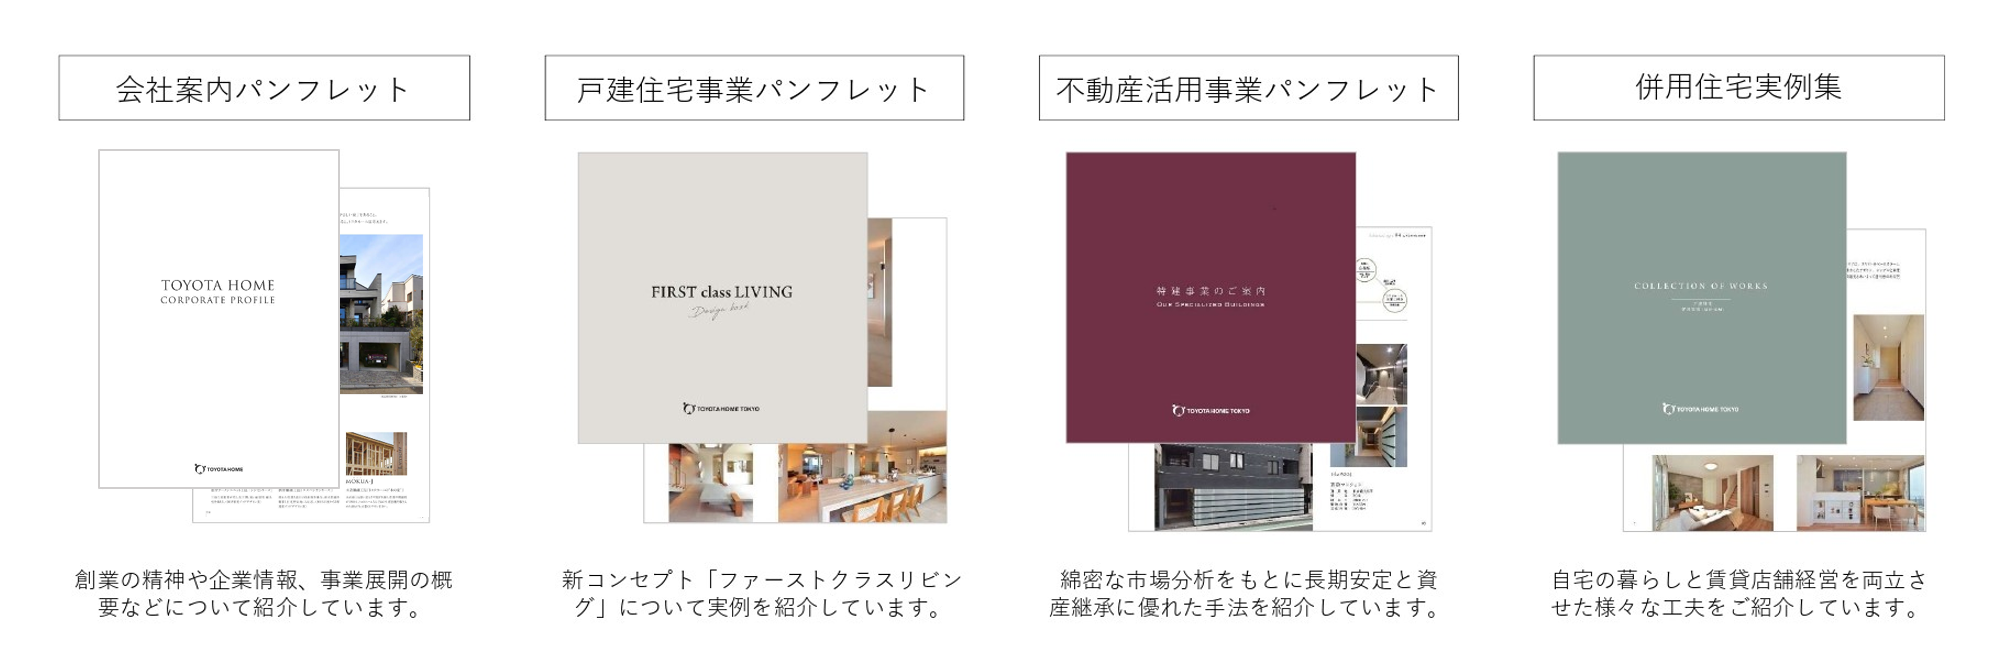 トヨタホーム東京のデジタルカタログをダウンロードする